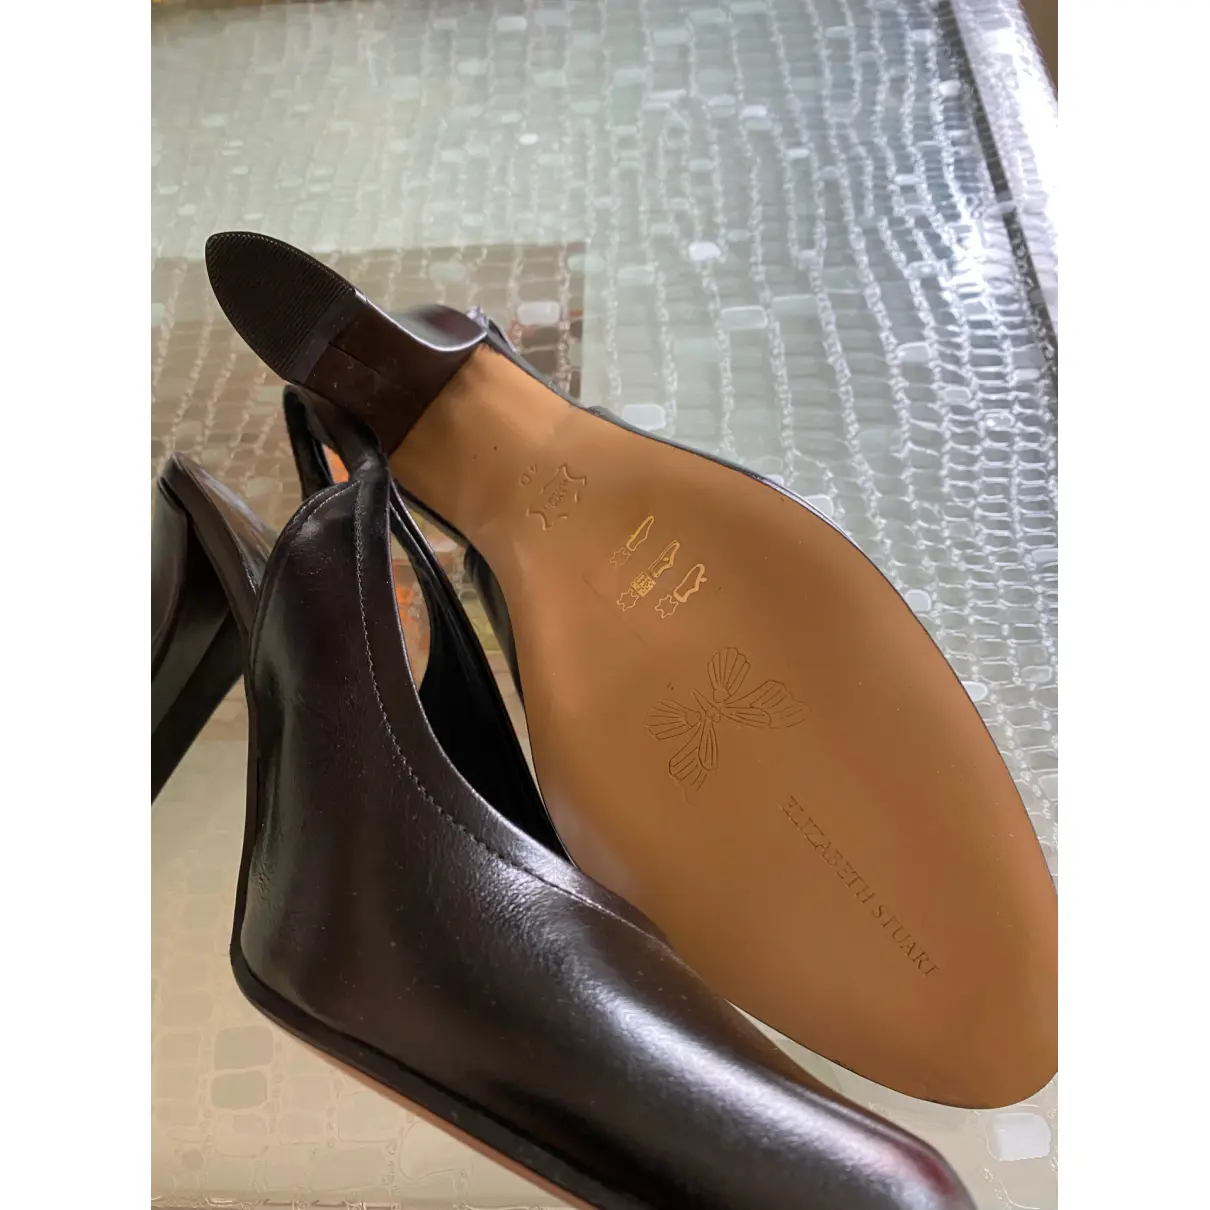 Leather heels Elisabeth Stuart